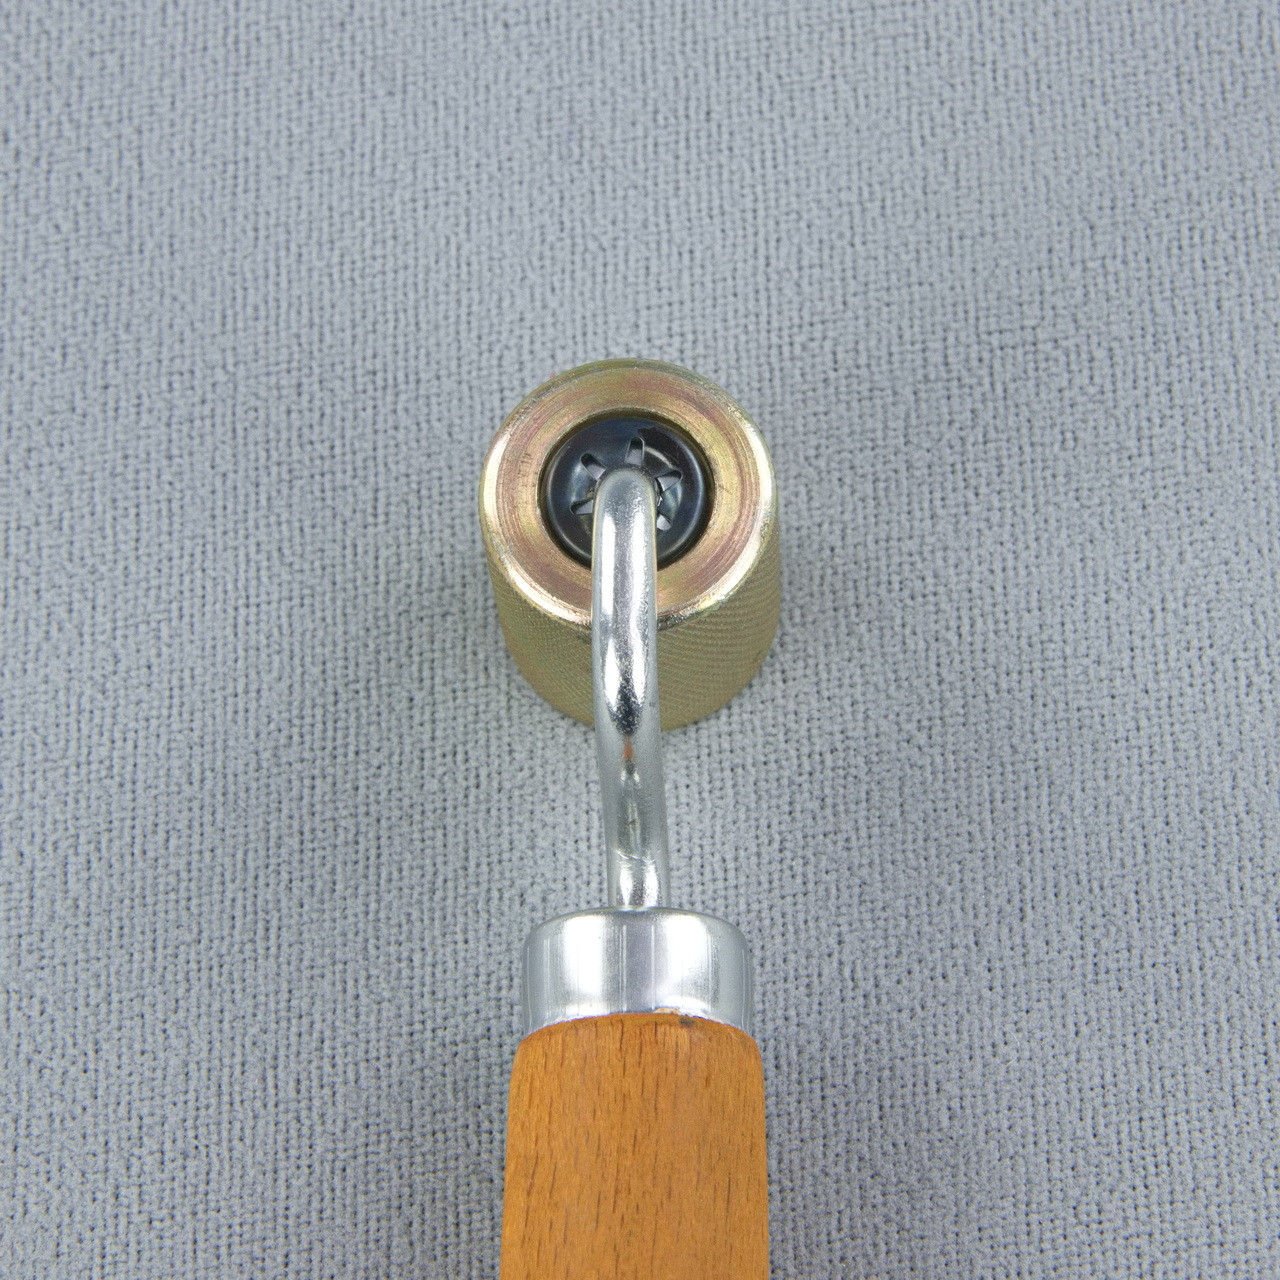 Валик прикаточный с подшипником для виброизоляции автомобиля, металлический детальная фотка